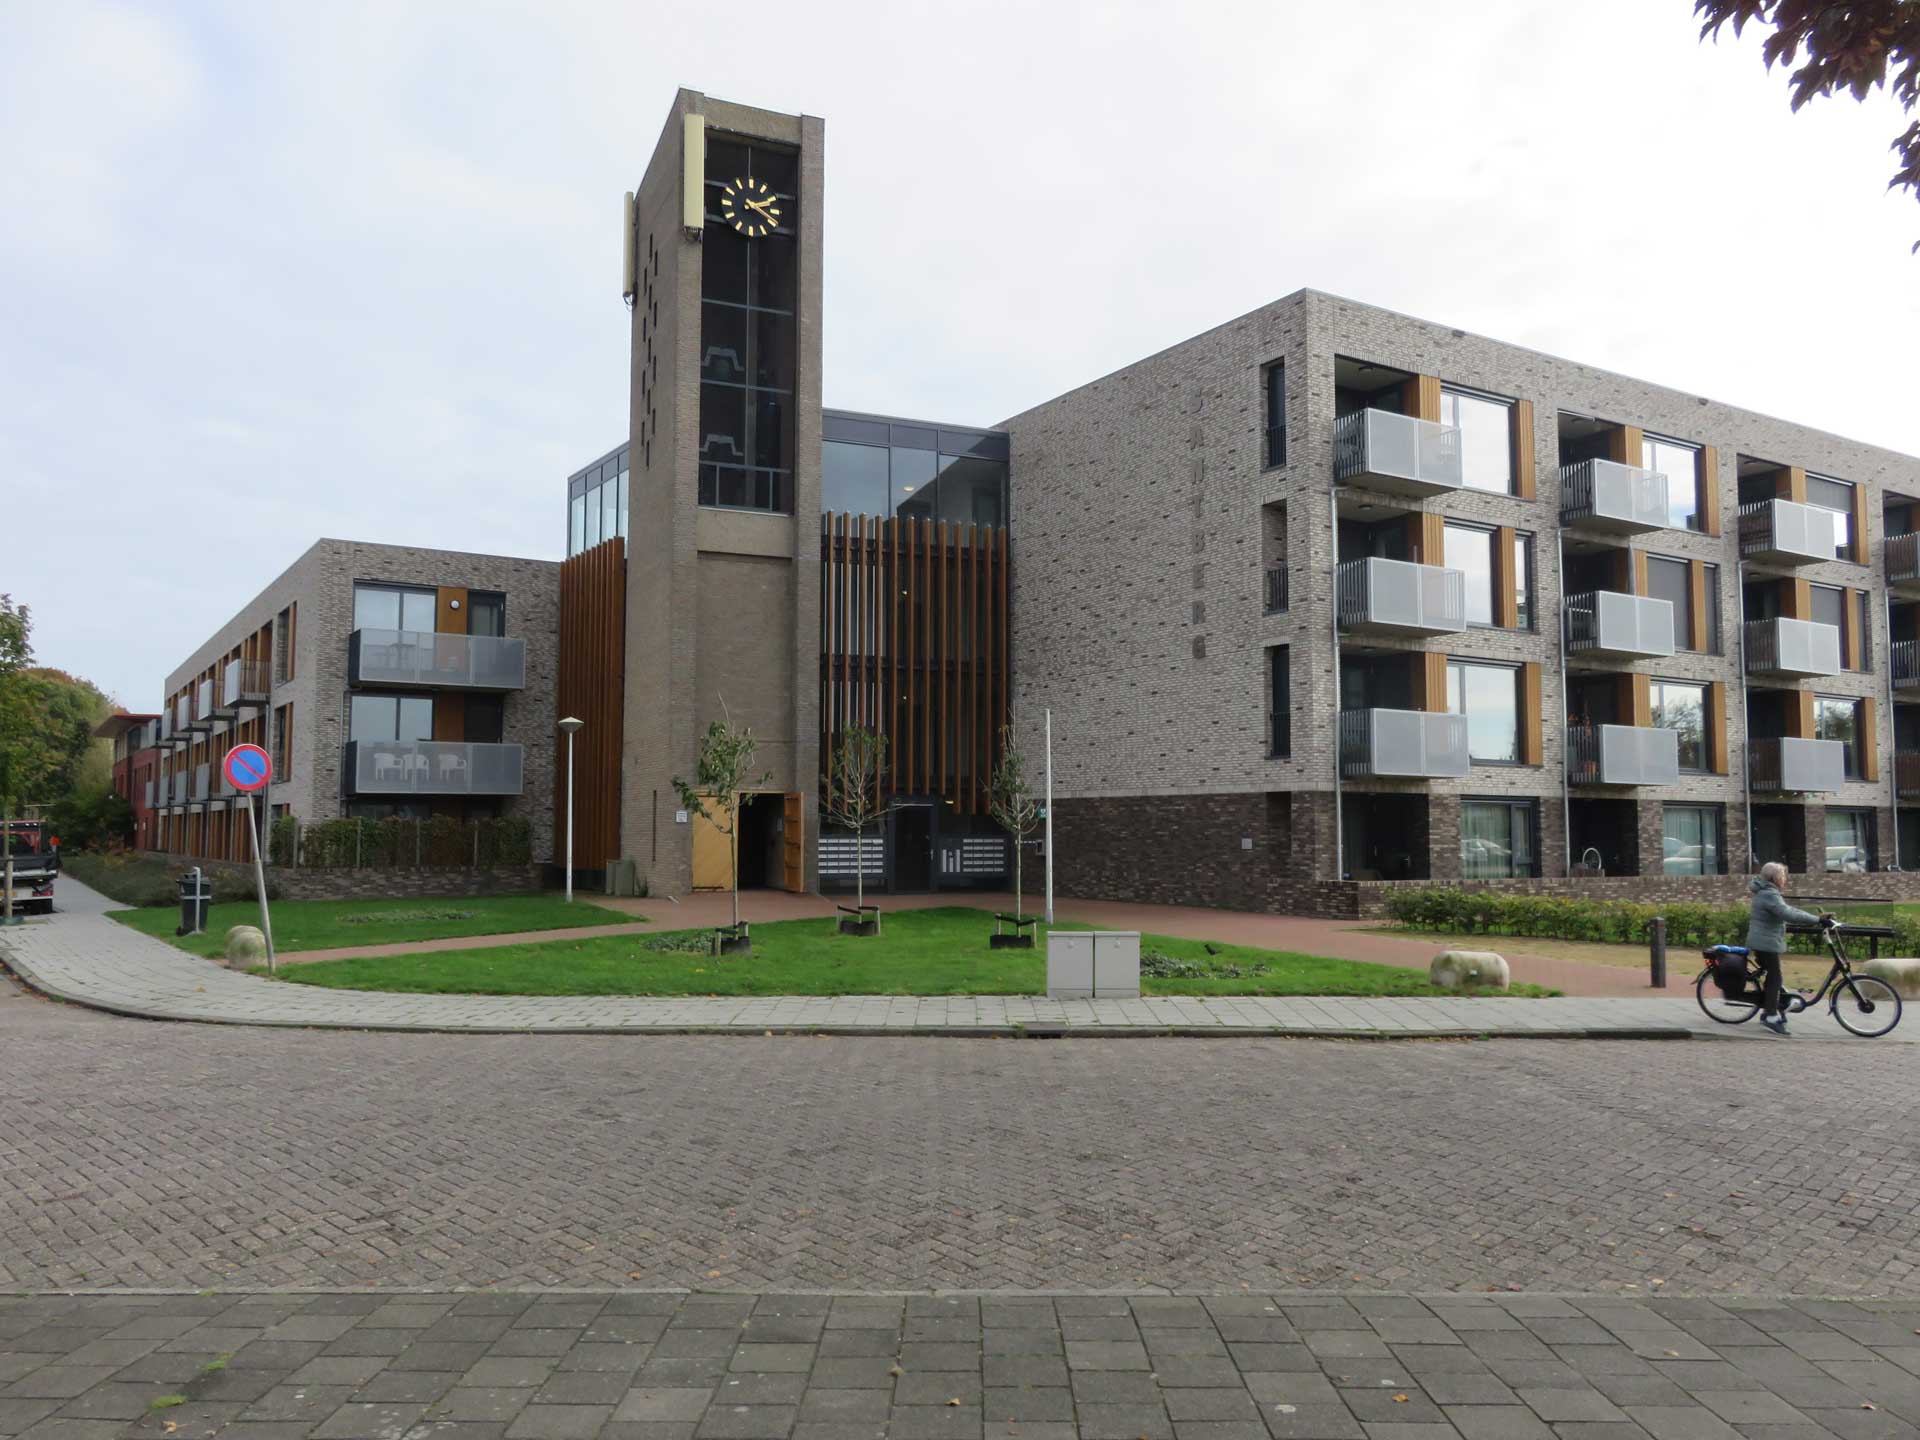 Appartementen op de plaats van de Goddelijke Voorzienigheidskerk (foto: BHIC / Frans van de Pol, 2021)